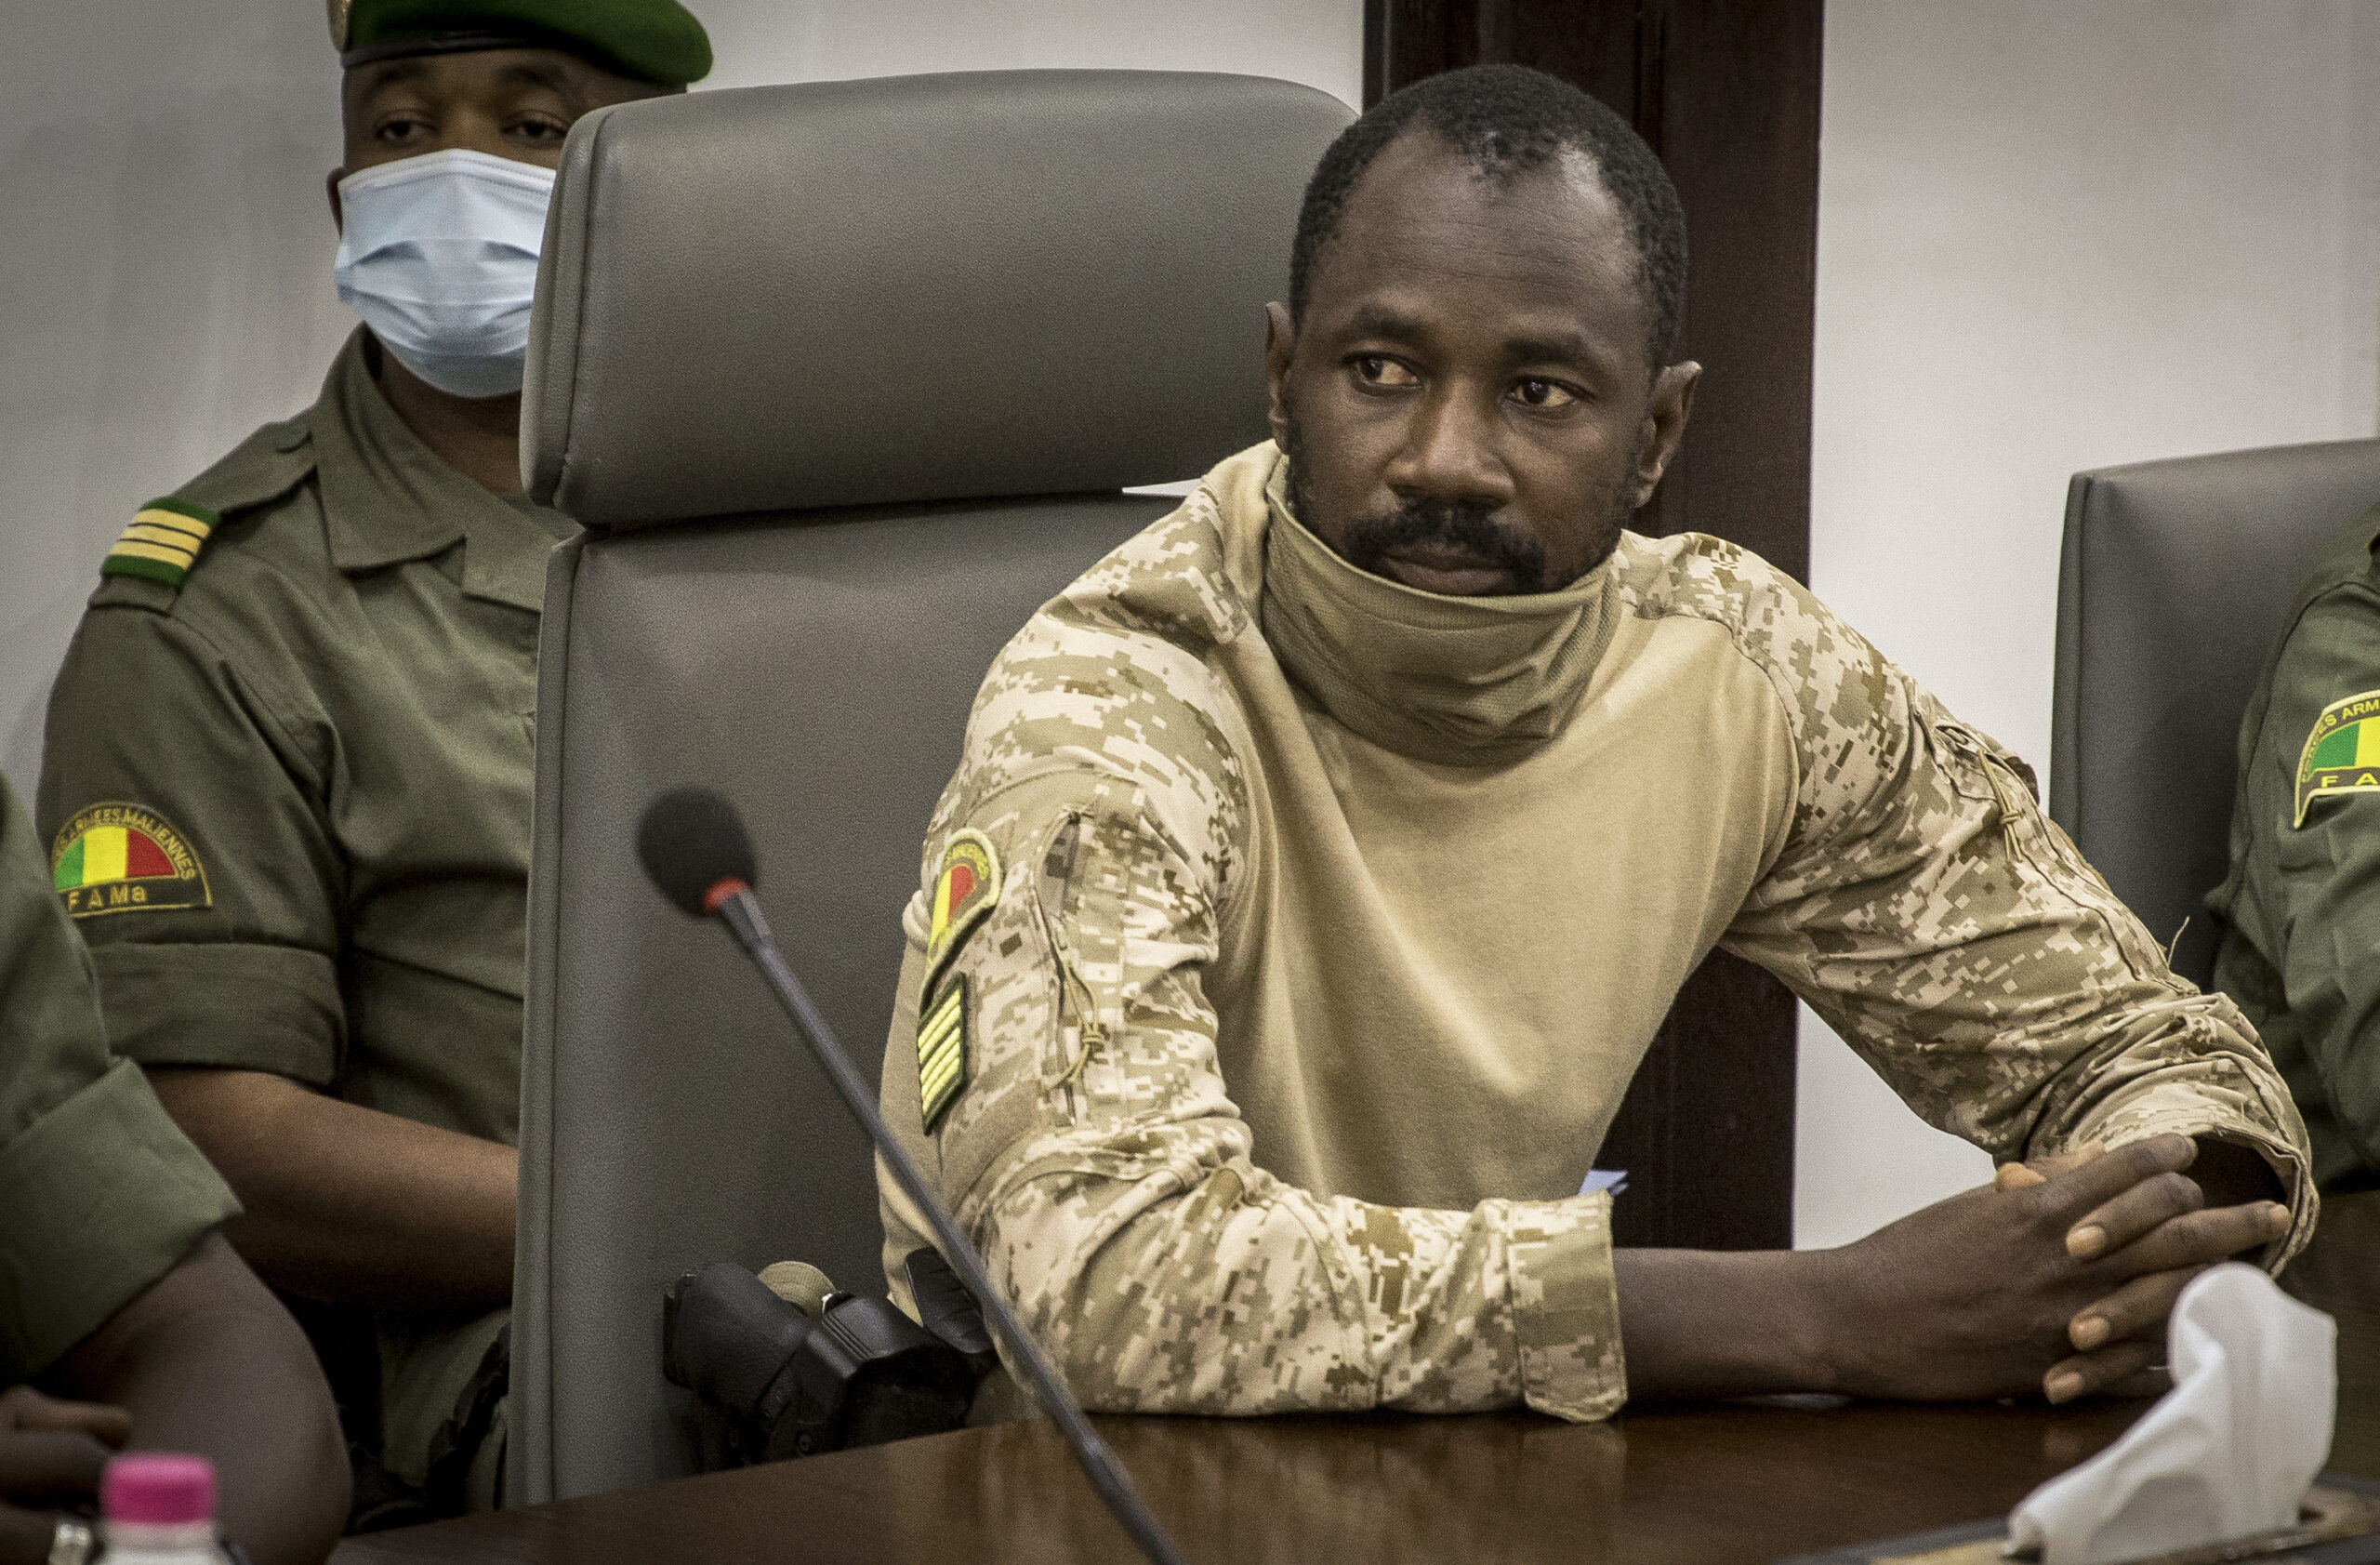 Le Mali qualifie de «mercenaires» les 49 militaires ivoiriens arrêtés dimanche à l’aéroport de Bamako